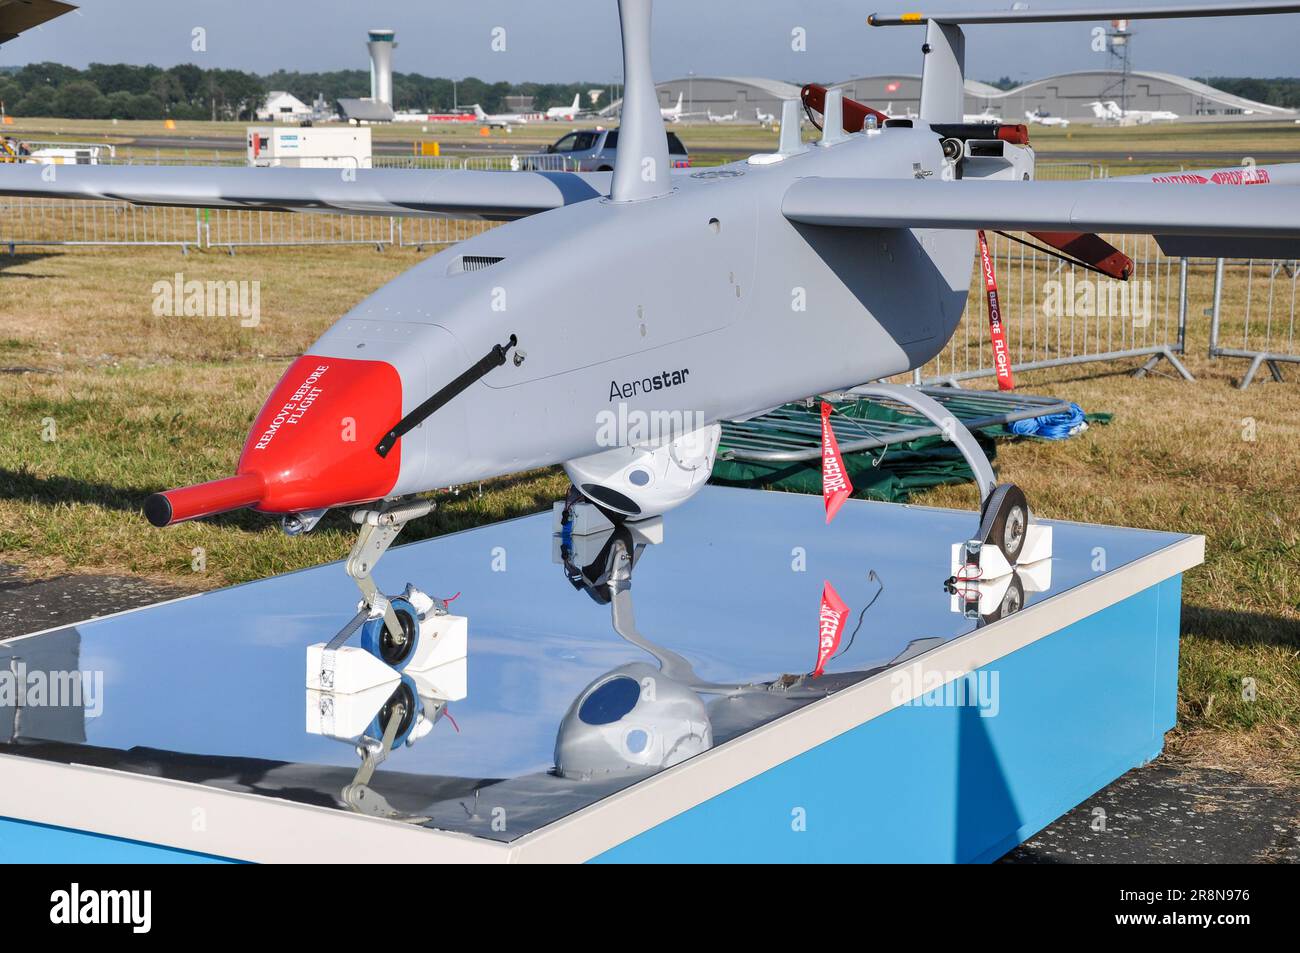 Véhicule aérien tactique sans pilote Aerostar conçu et construit par Aeronautics Defense Systems pour l'armée israélienne. Renseignement, surveillance, recce UAV Banque D'Images